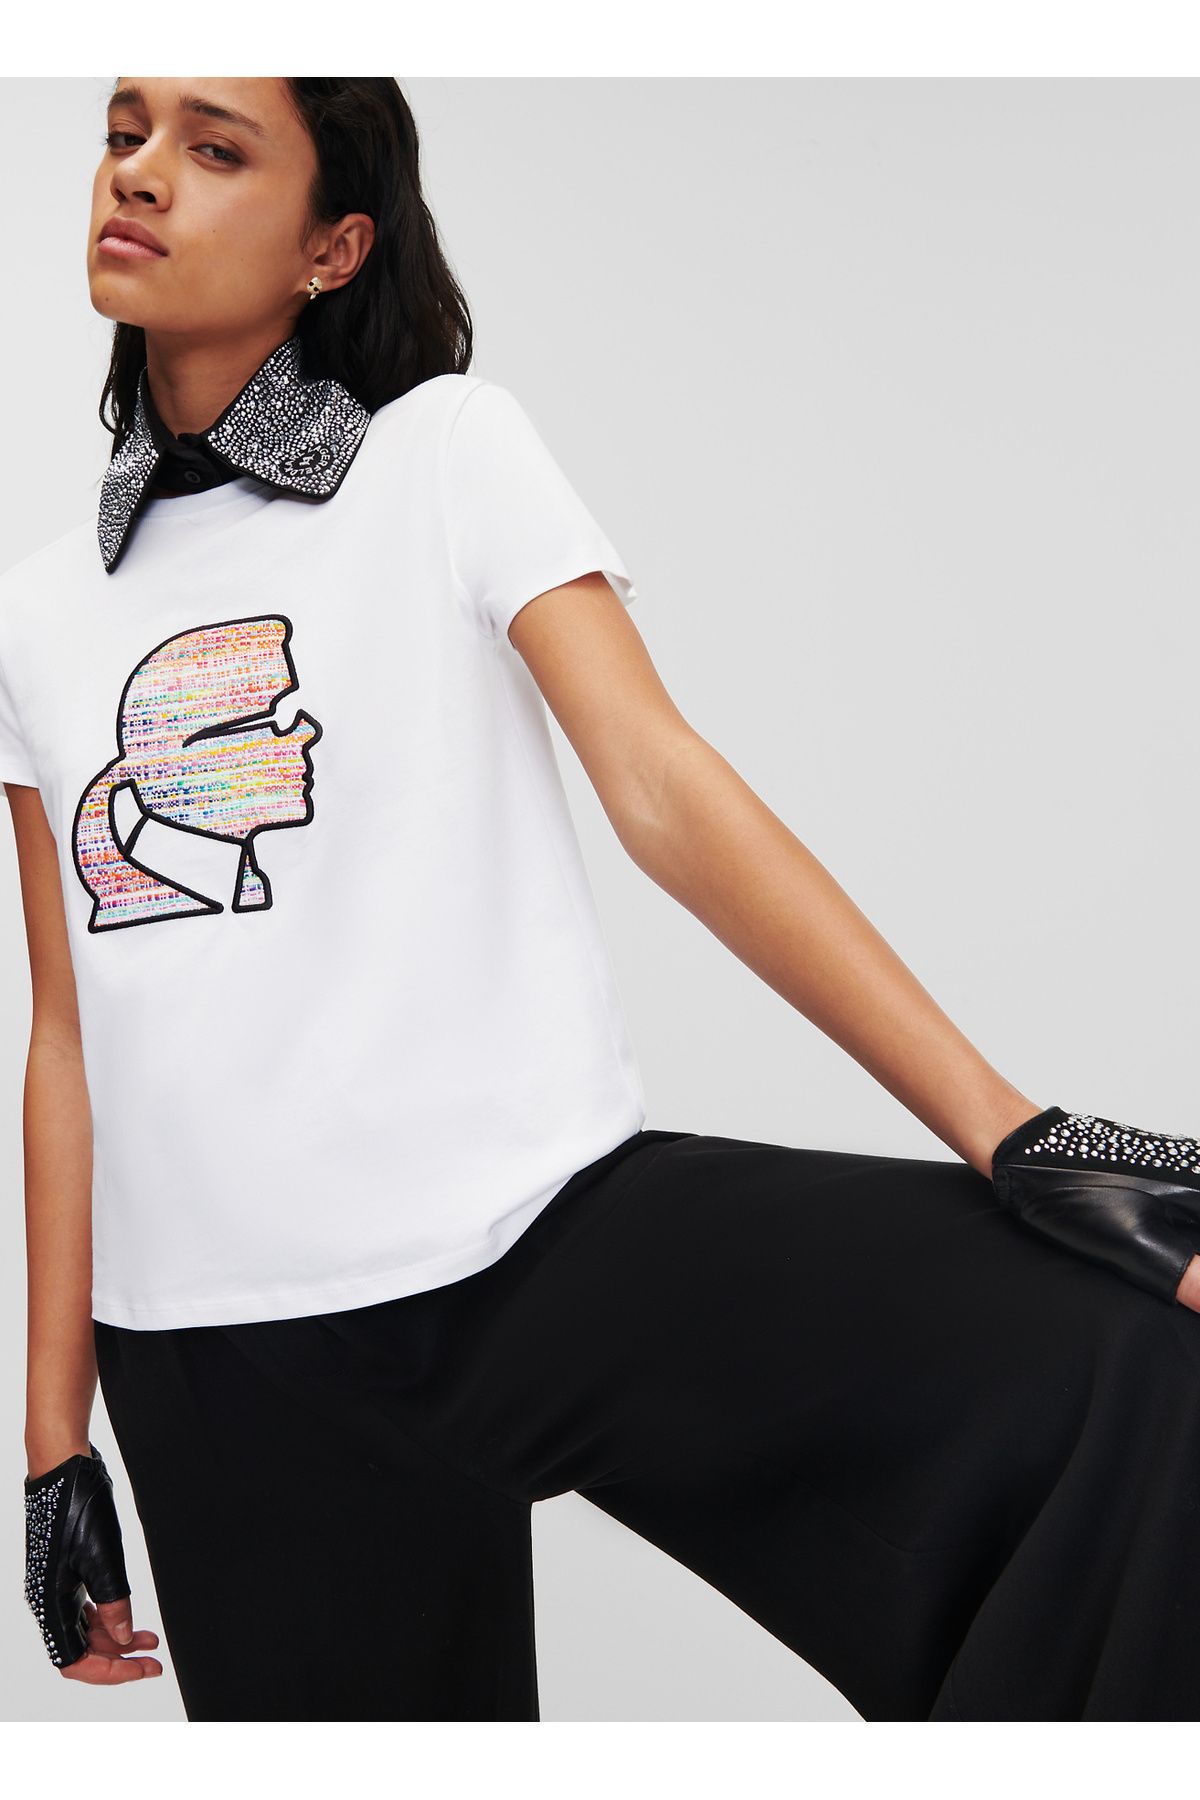 Karl Lagerfeld Bisiklet Yaka Baskılı Beyaz Kadın T-Shirt 235W1707